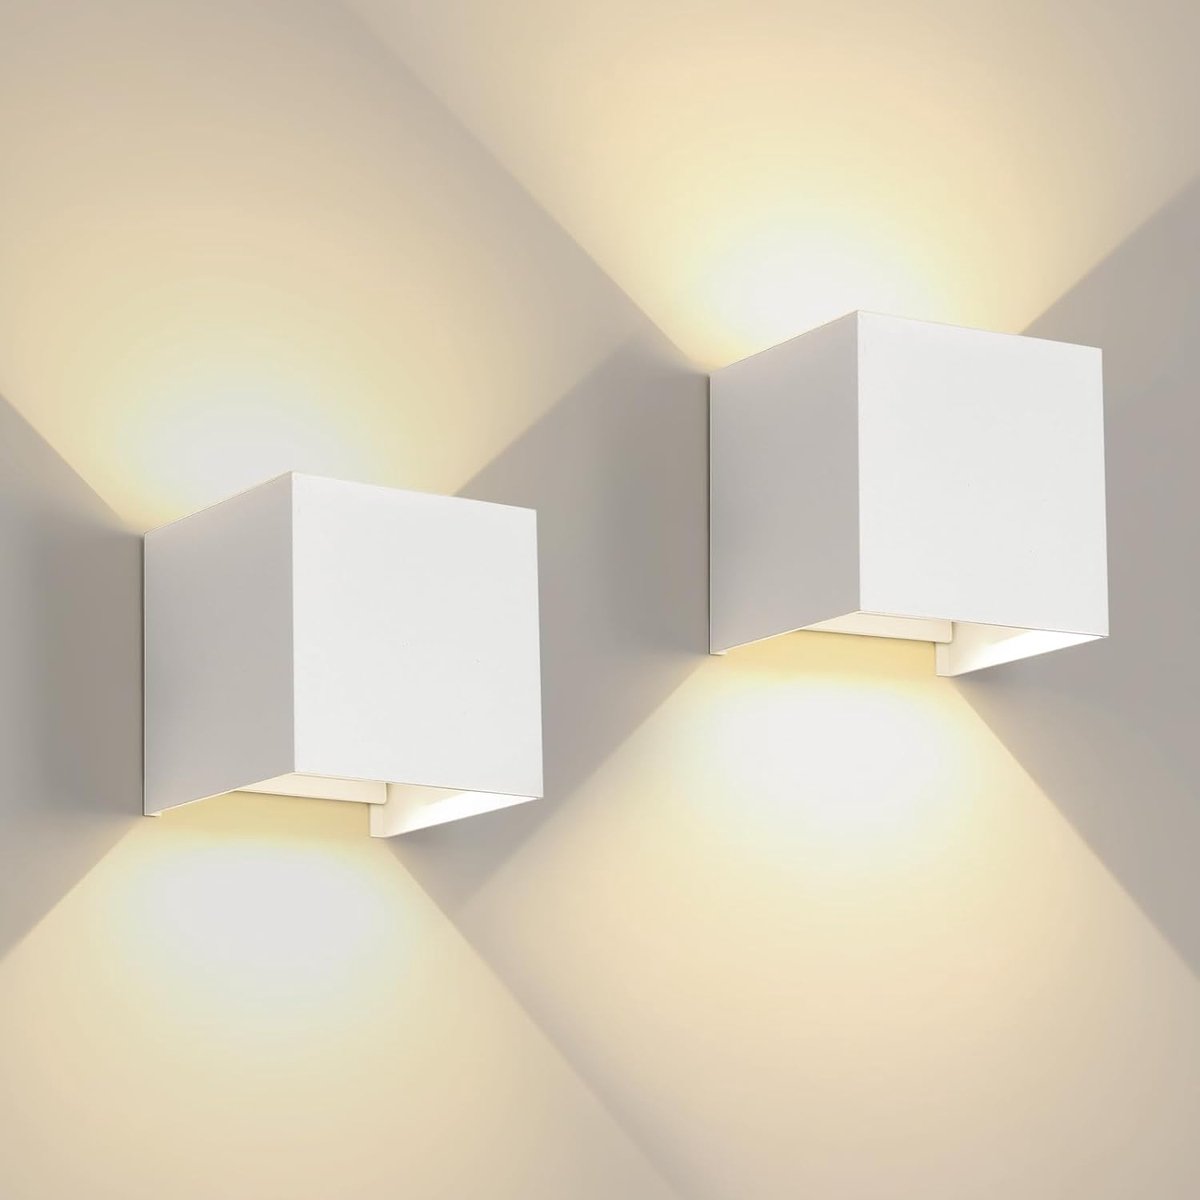 Goeco Wandlamp 2 stuks - Geschikt voor binnen en buiten - Buitenlamp - Industrieel - Wandlampen - Wit - 3000K - warm licht